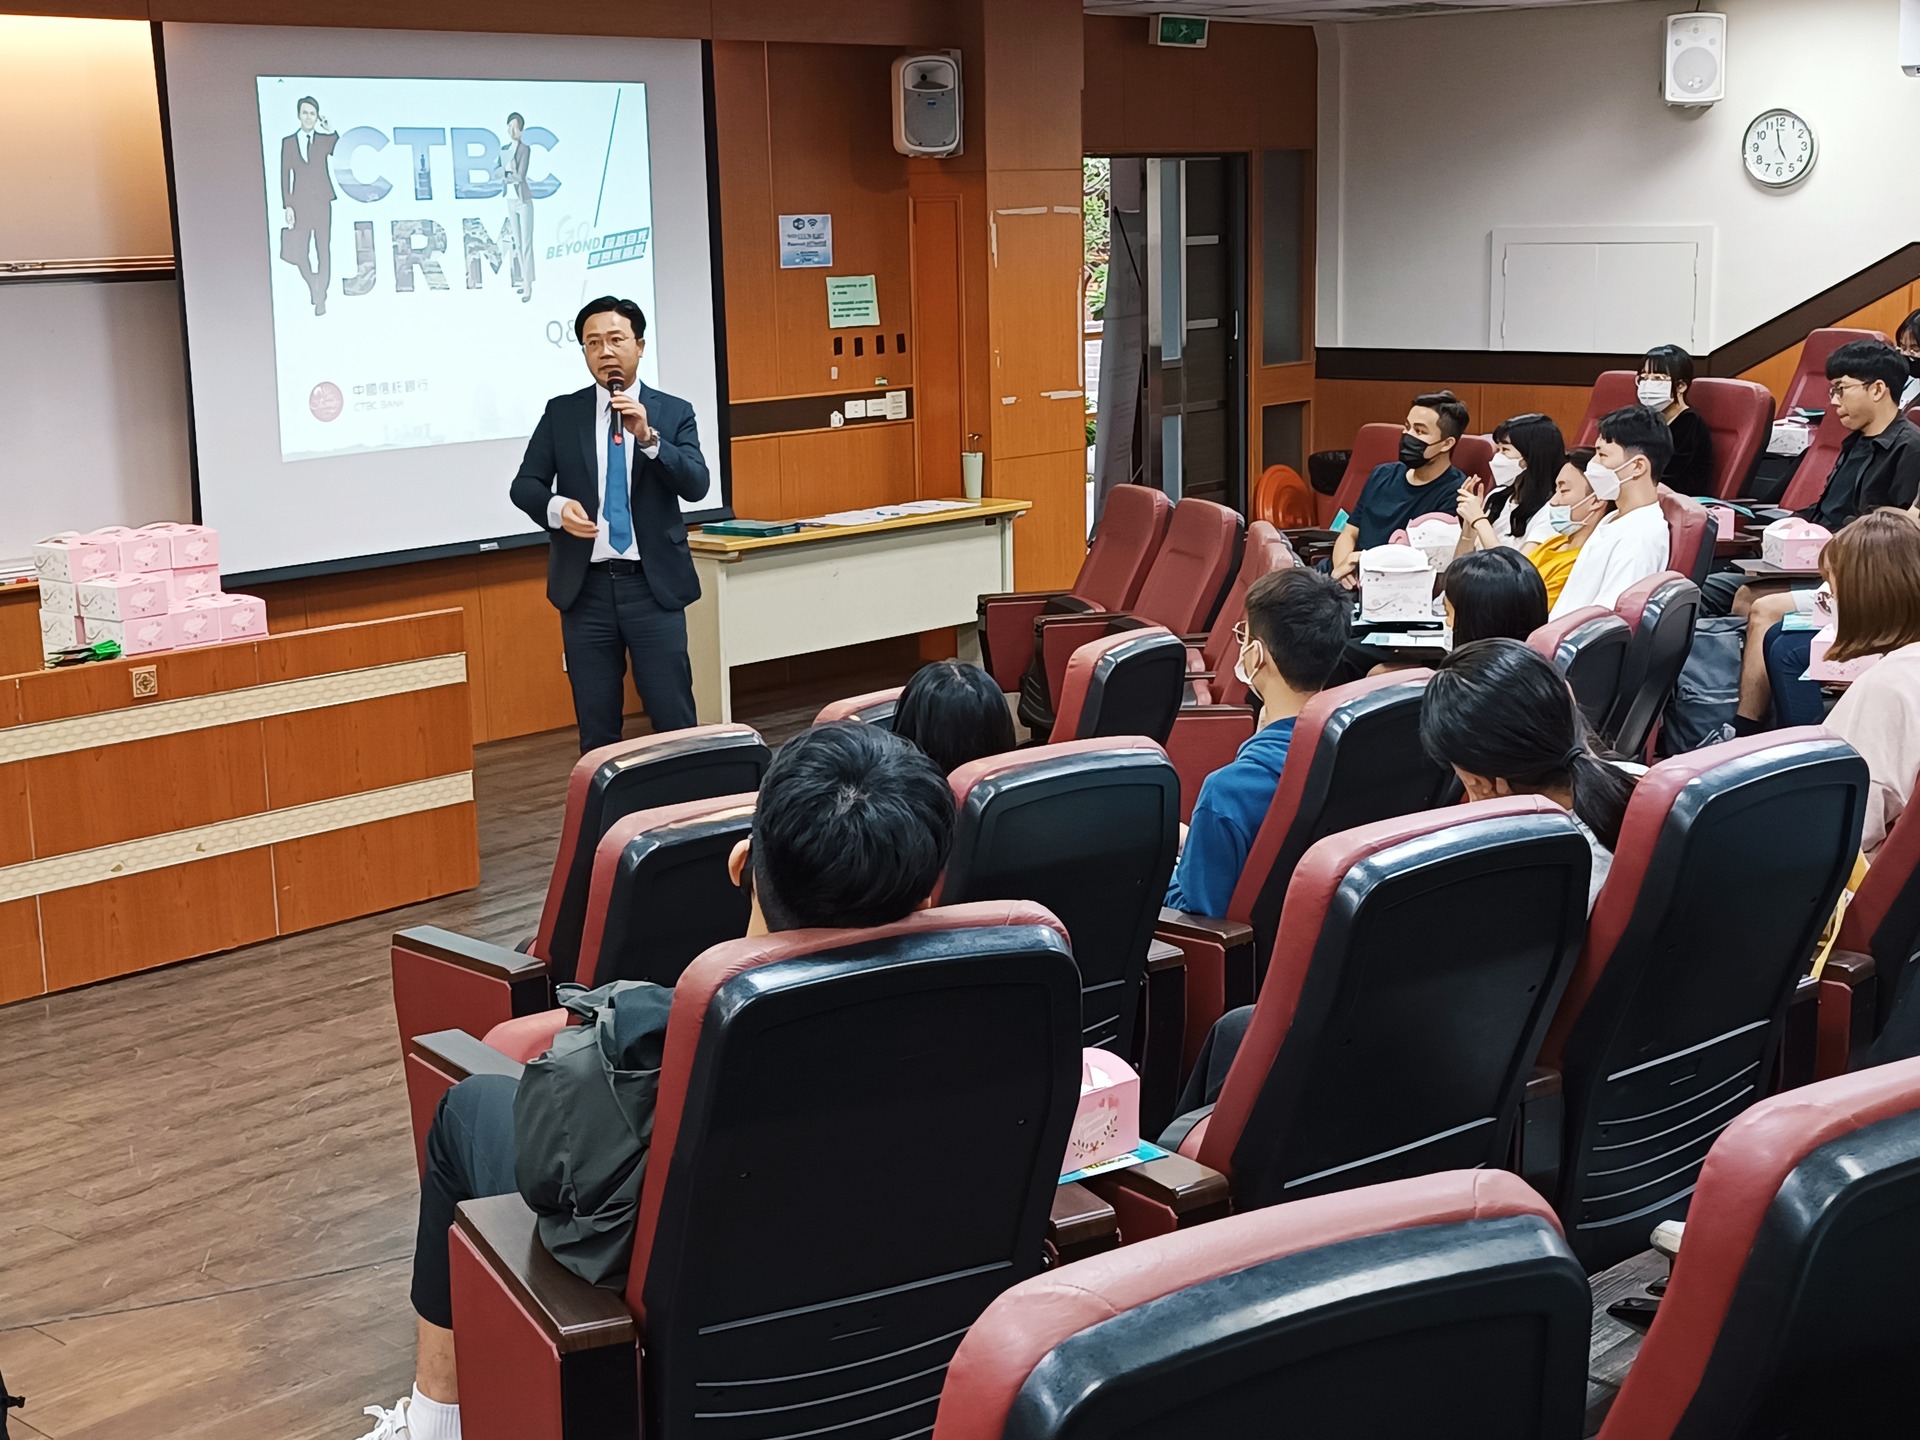 梁慶全協理鼓勵現場同學加入法金儲備幹部計畫